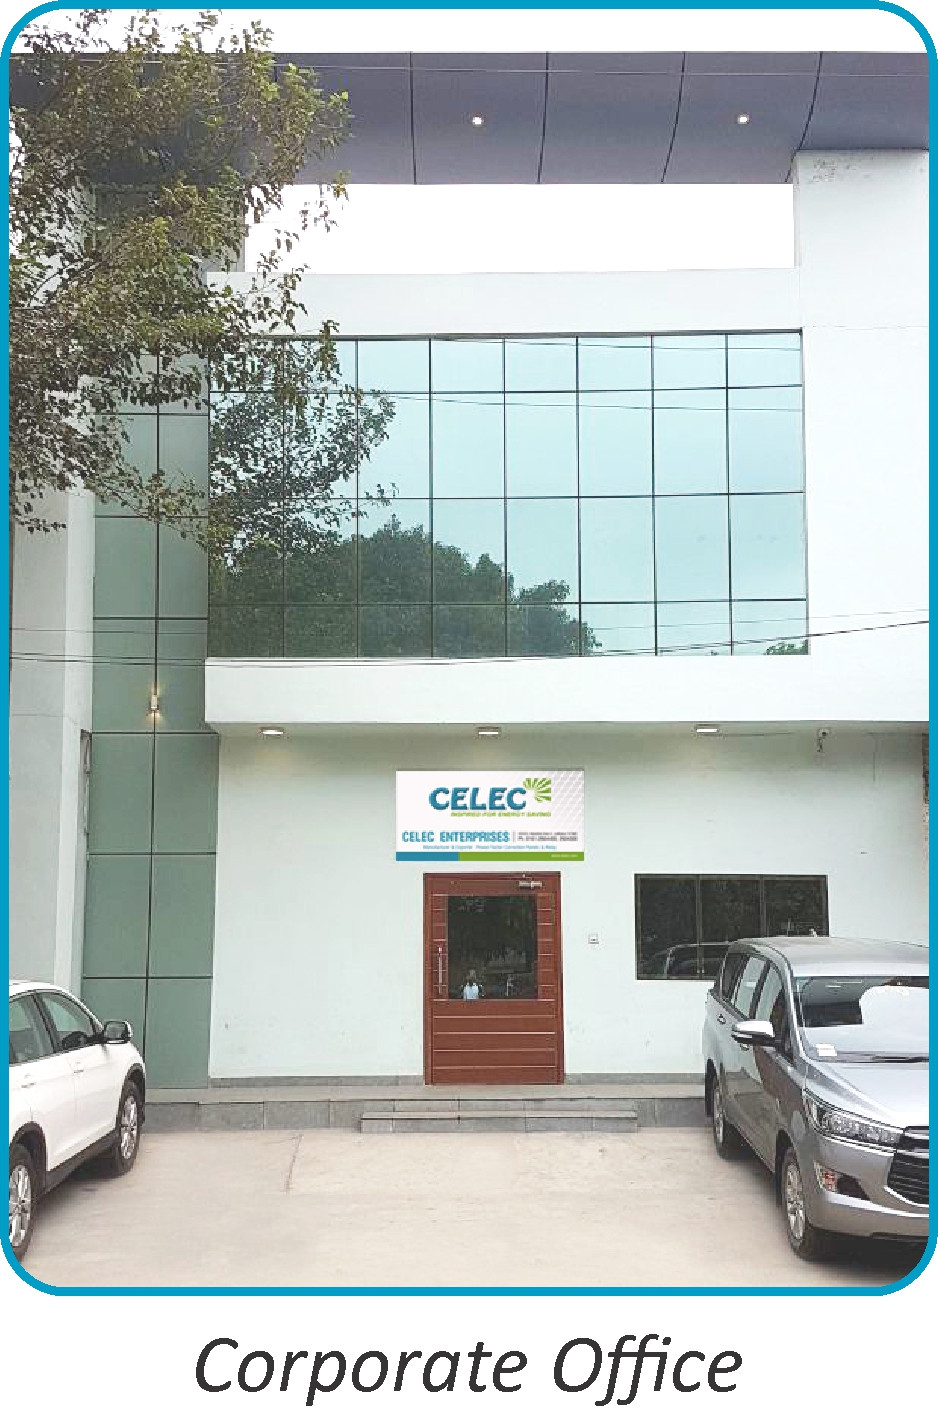 Celec-Profile-Corporate-Office